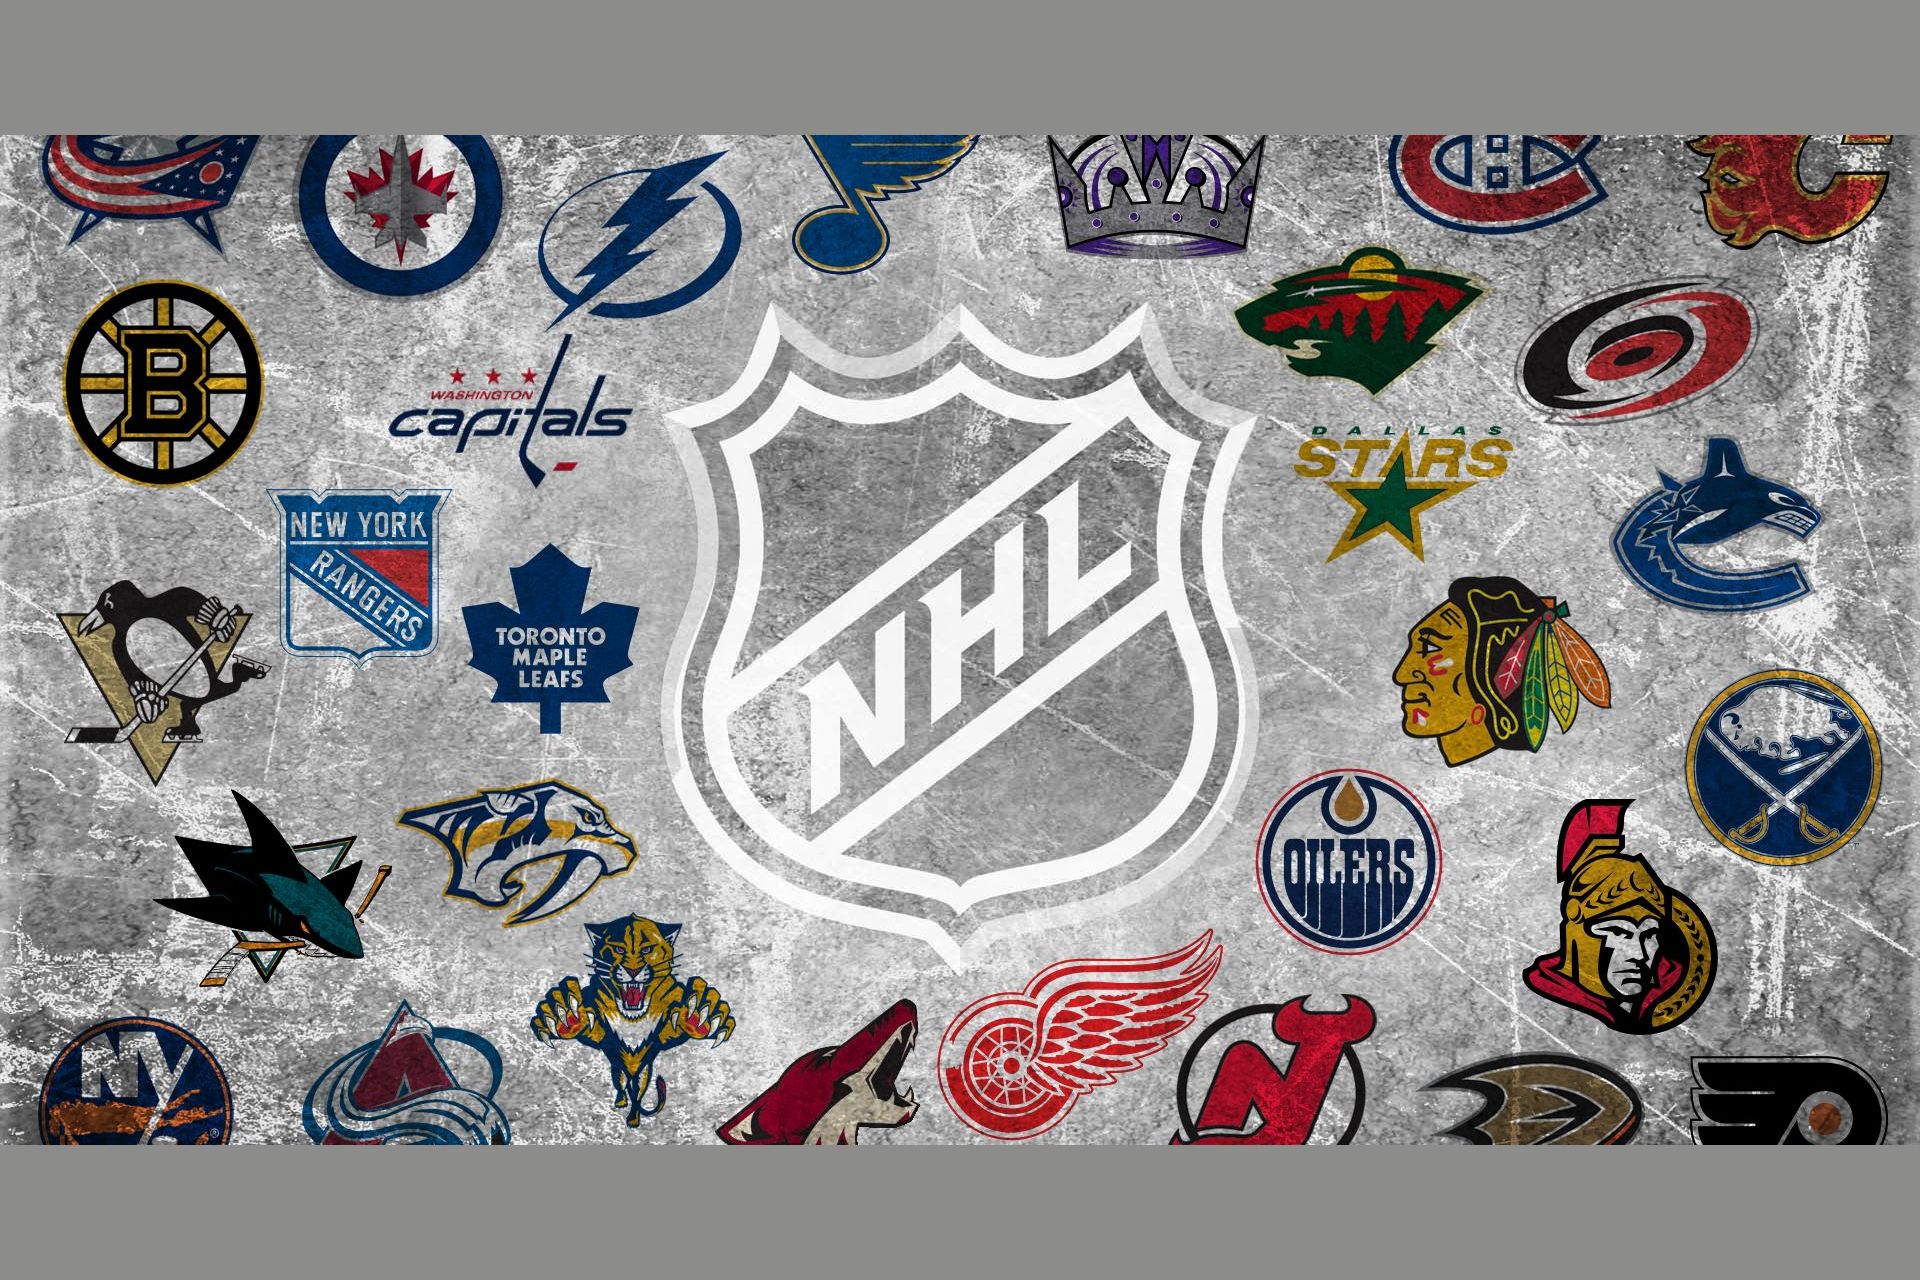 Yahoo nhl. NHL команды. Логотипы хоккейных команд. Эмблема НХЛ. Эмблемы хоккейных клубов НХЛ.